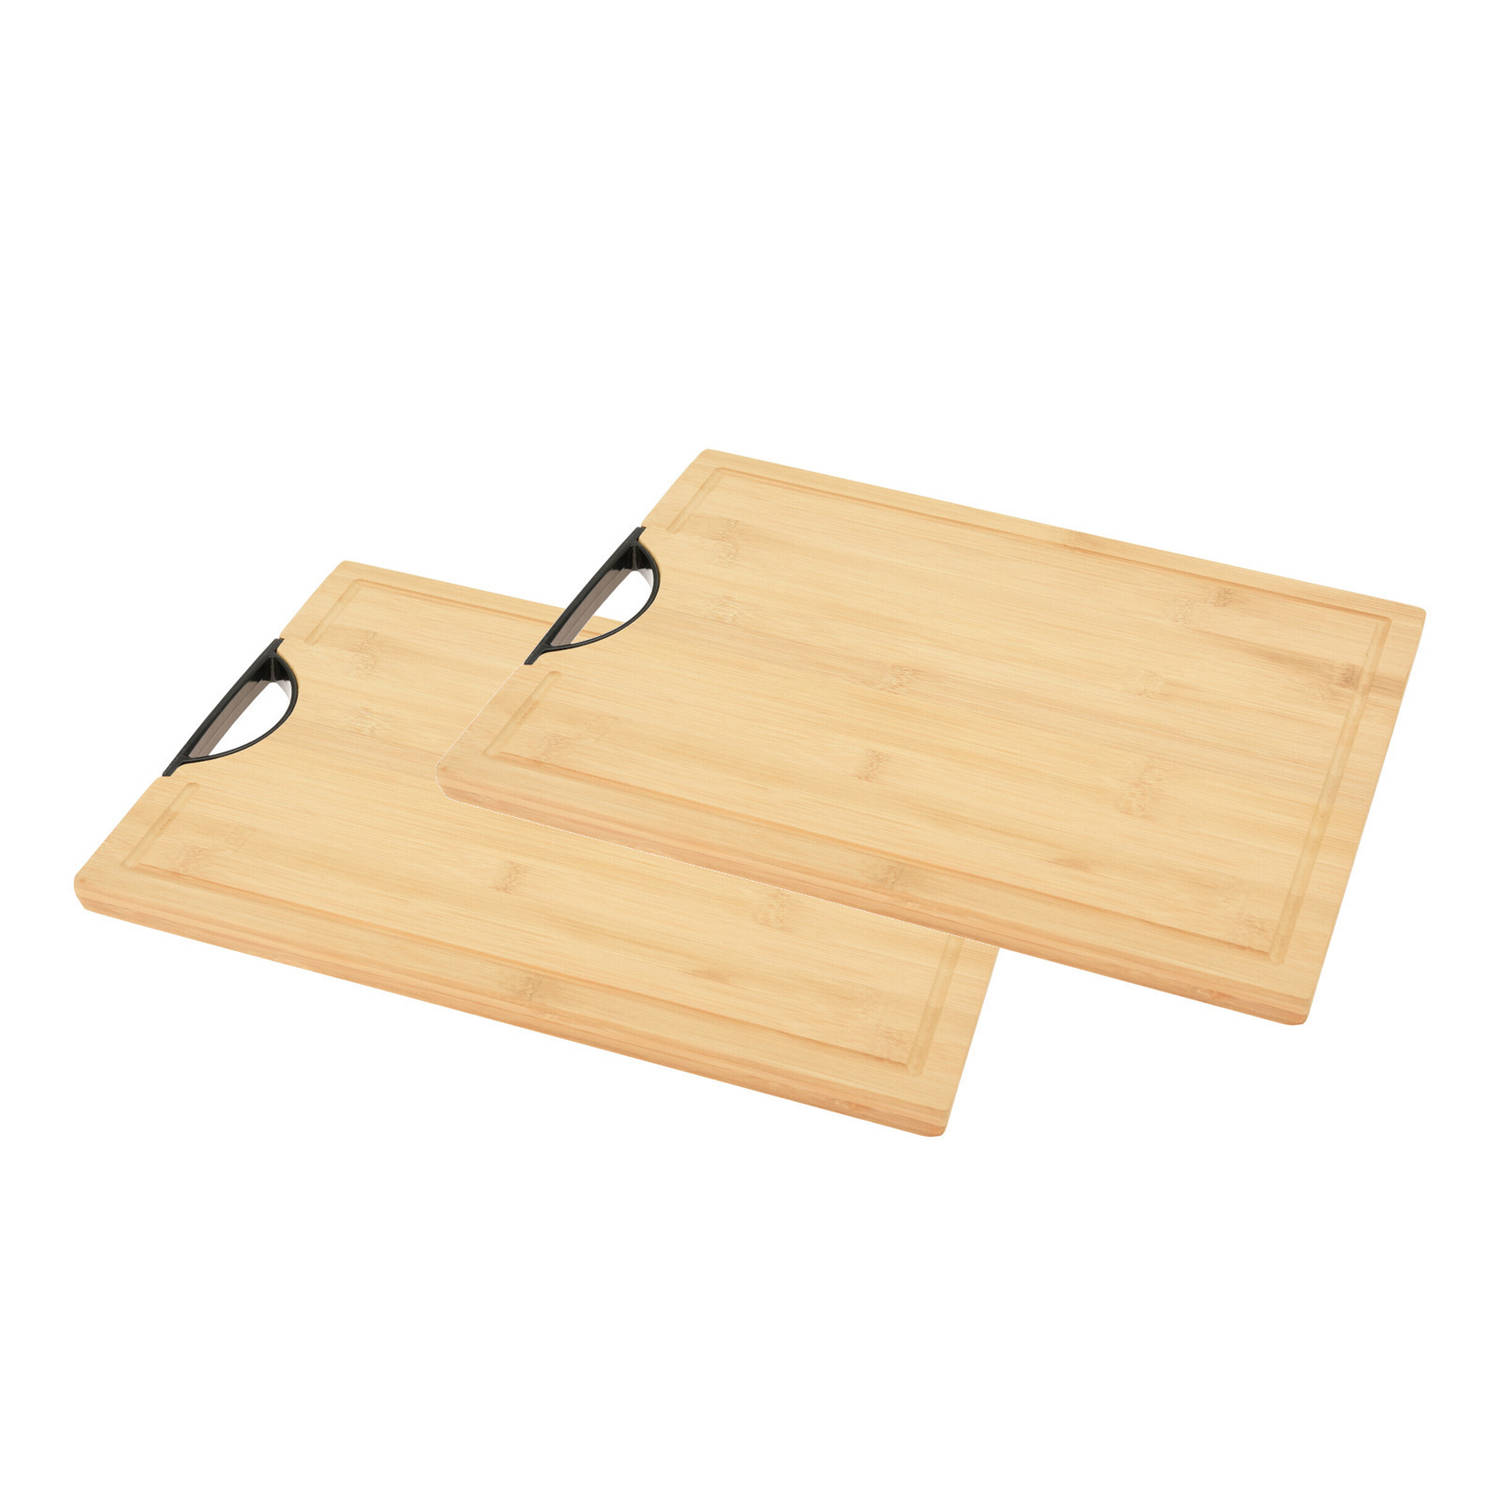 stuks bamboe houten snijplank / serveerplank met handvat 40 x 30 cm - Snijplanken | Blokker